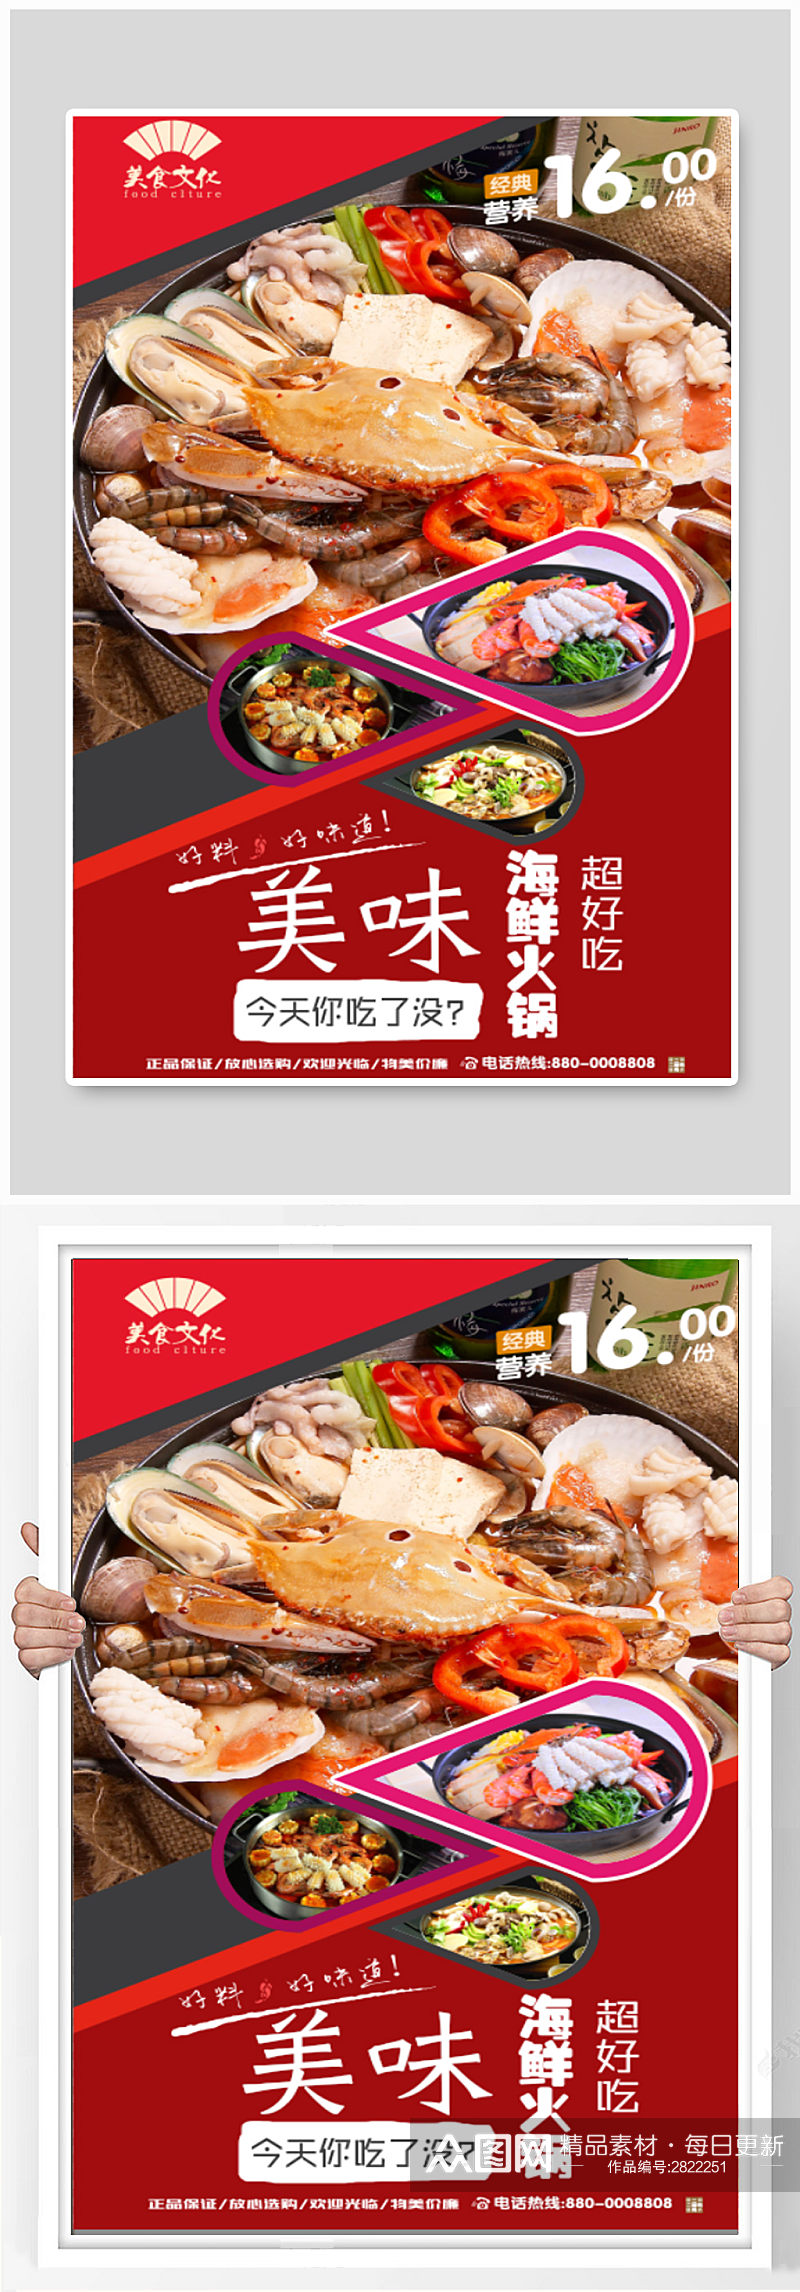 海鲜火锅美食宣传海报设计素材